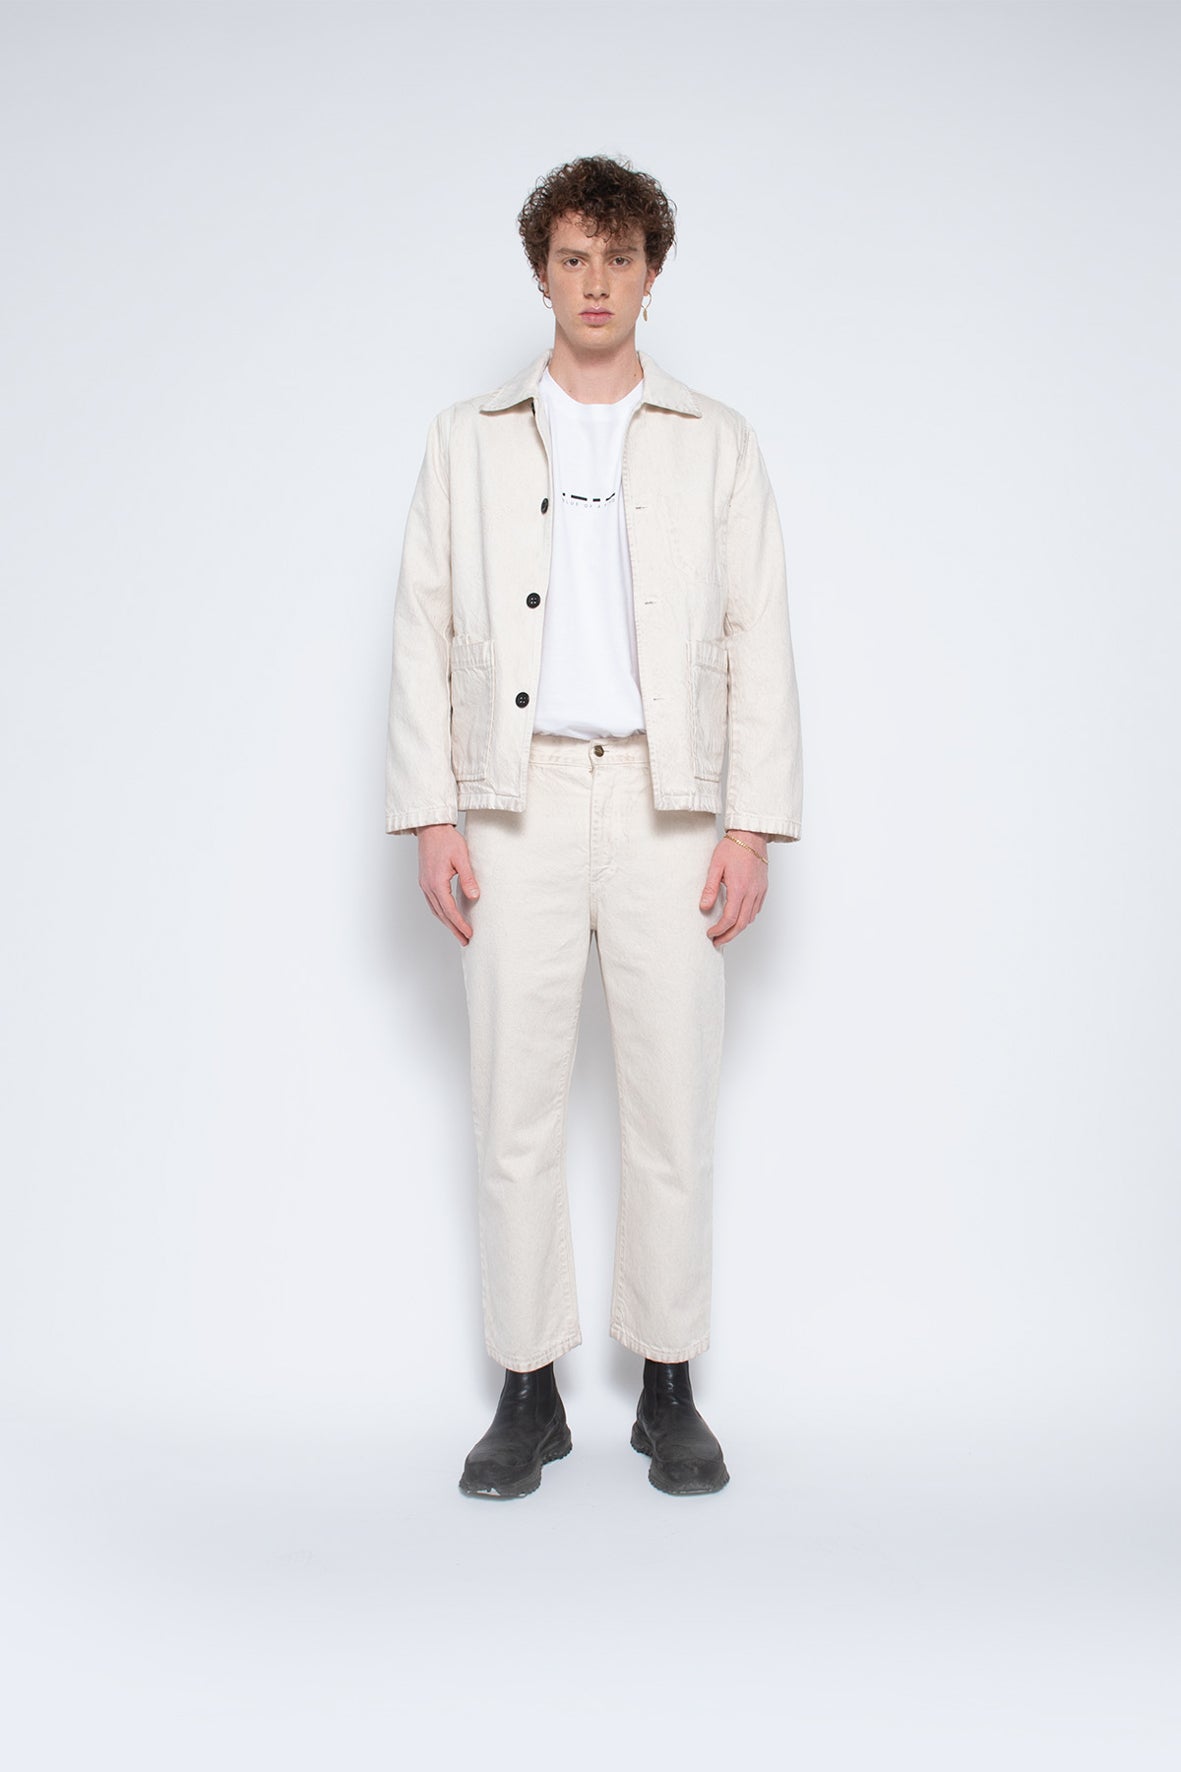 Denali shirt jacket unisex - responsible fabric